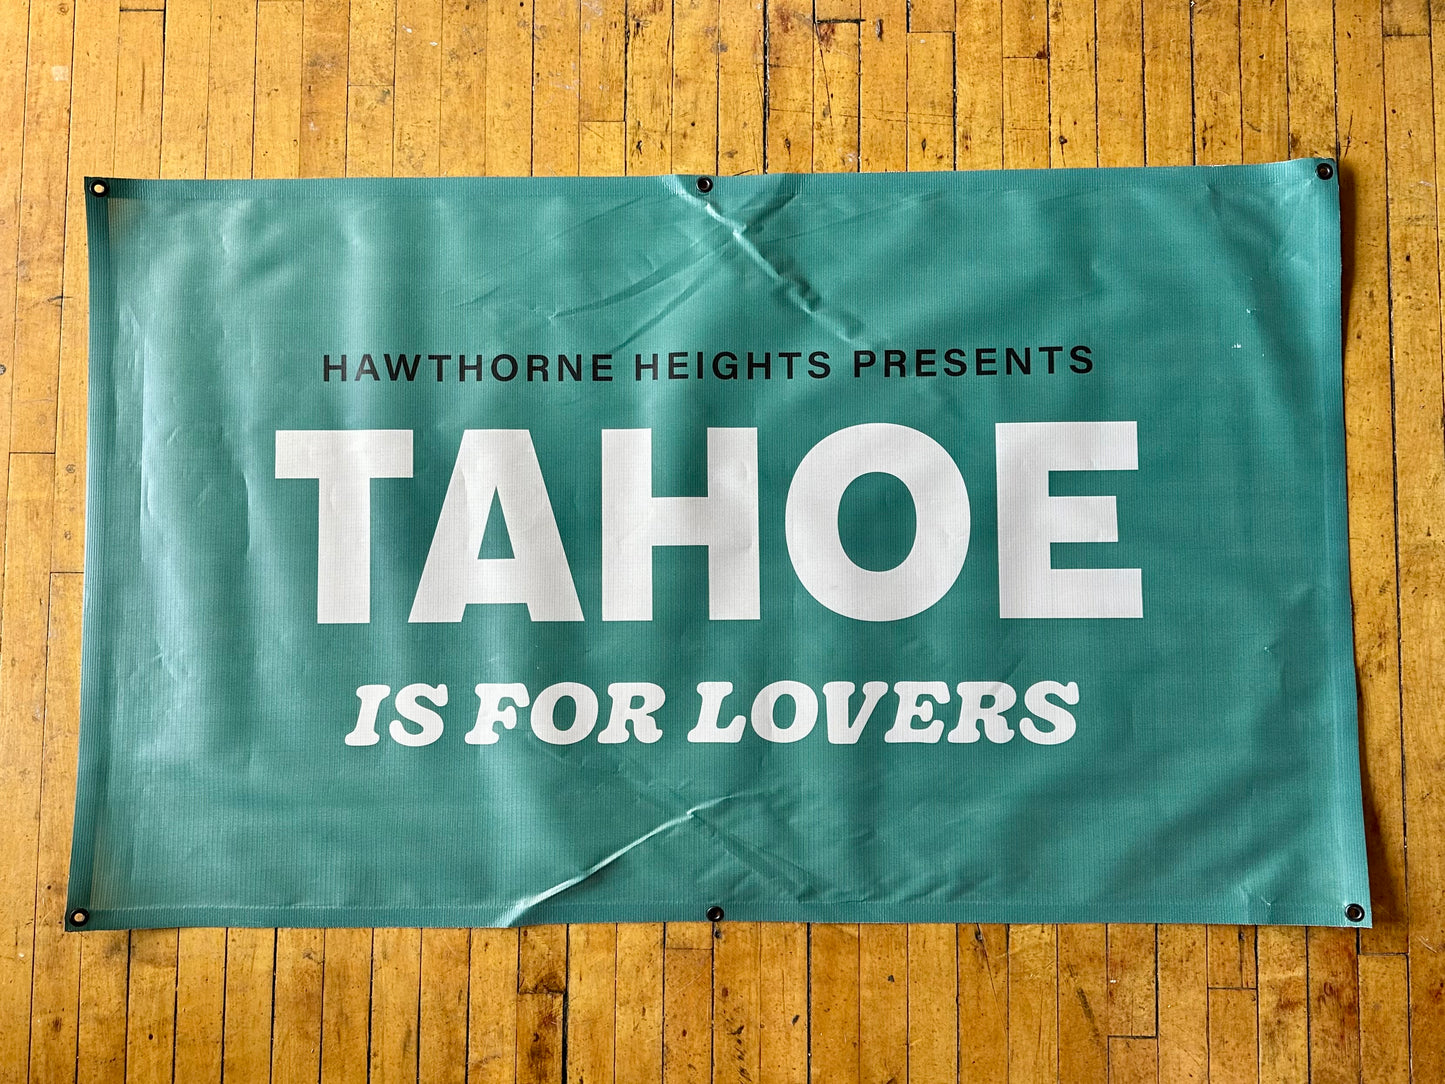 Lake Tahoe Festival Banner